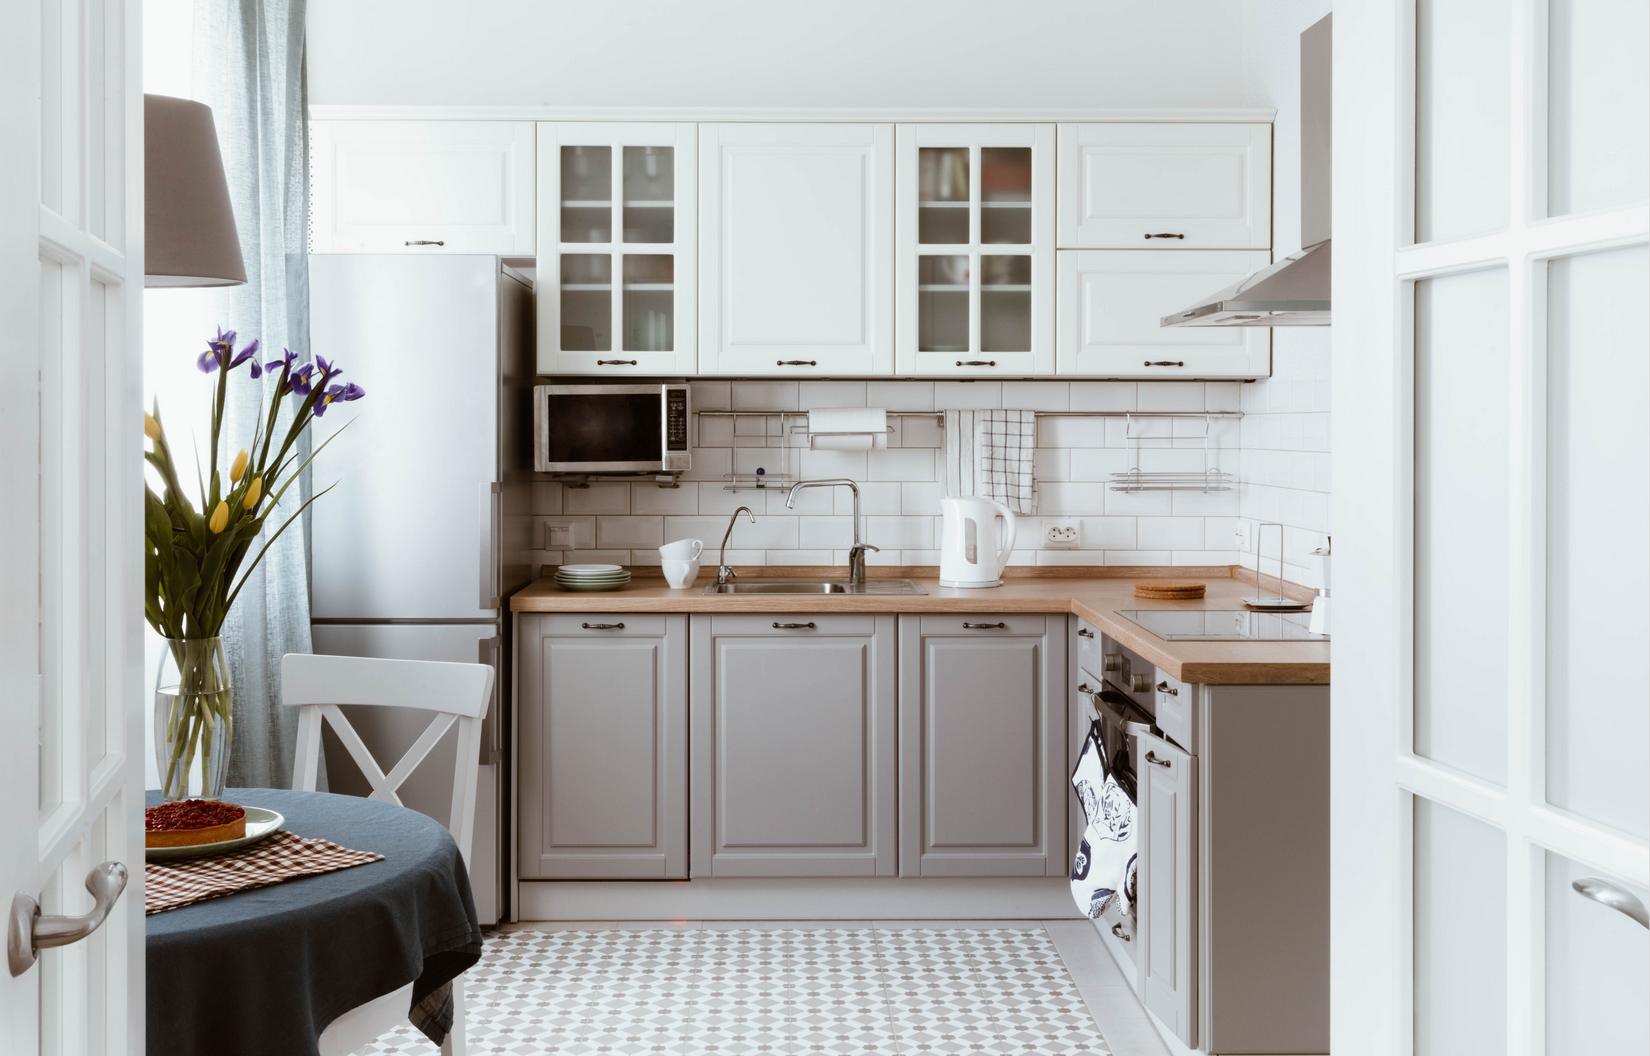 Sàn phòng bếp được lát gạch tương tự nhằm tạo sự liên kết với hành lang lối vào. Tủ bếp trên màu trắng tương phản nhẹ nhàng với tủ bếp dưới màu xám, mặt bàn bếp ốp gỗ cũng tạo nên vẻ mộc mạc cho phòng bếp nhỏ.